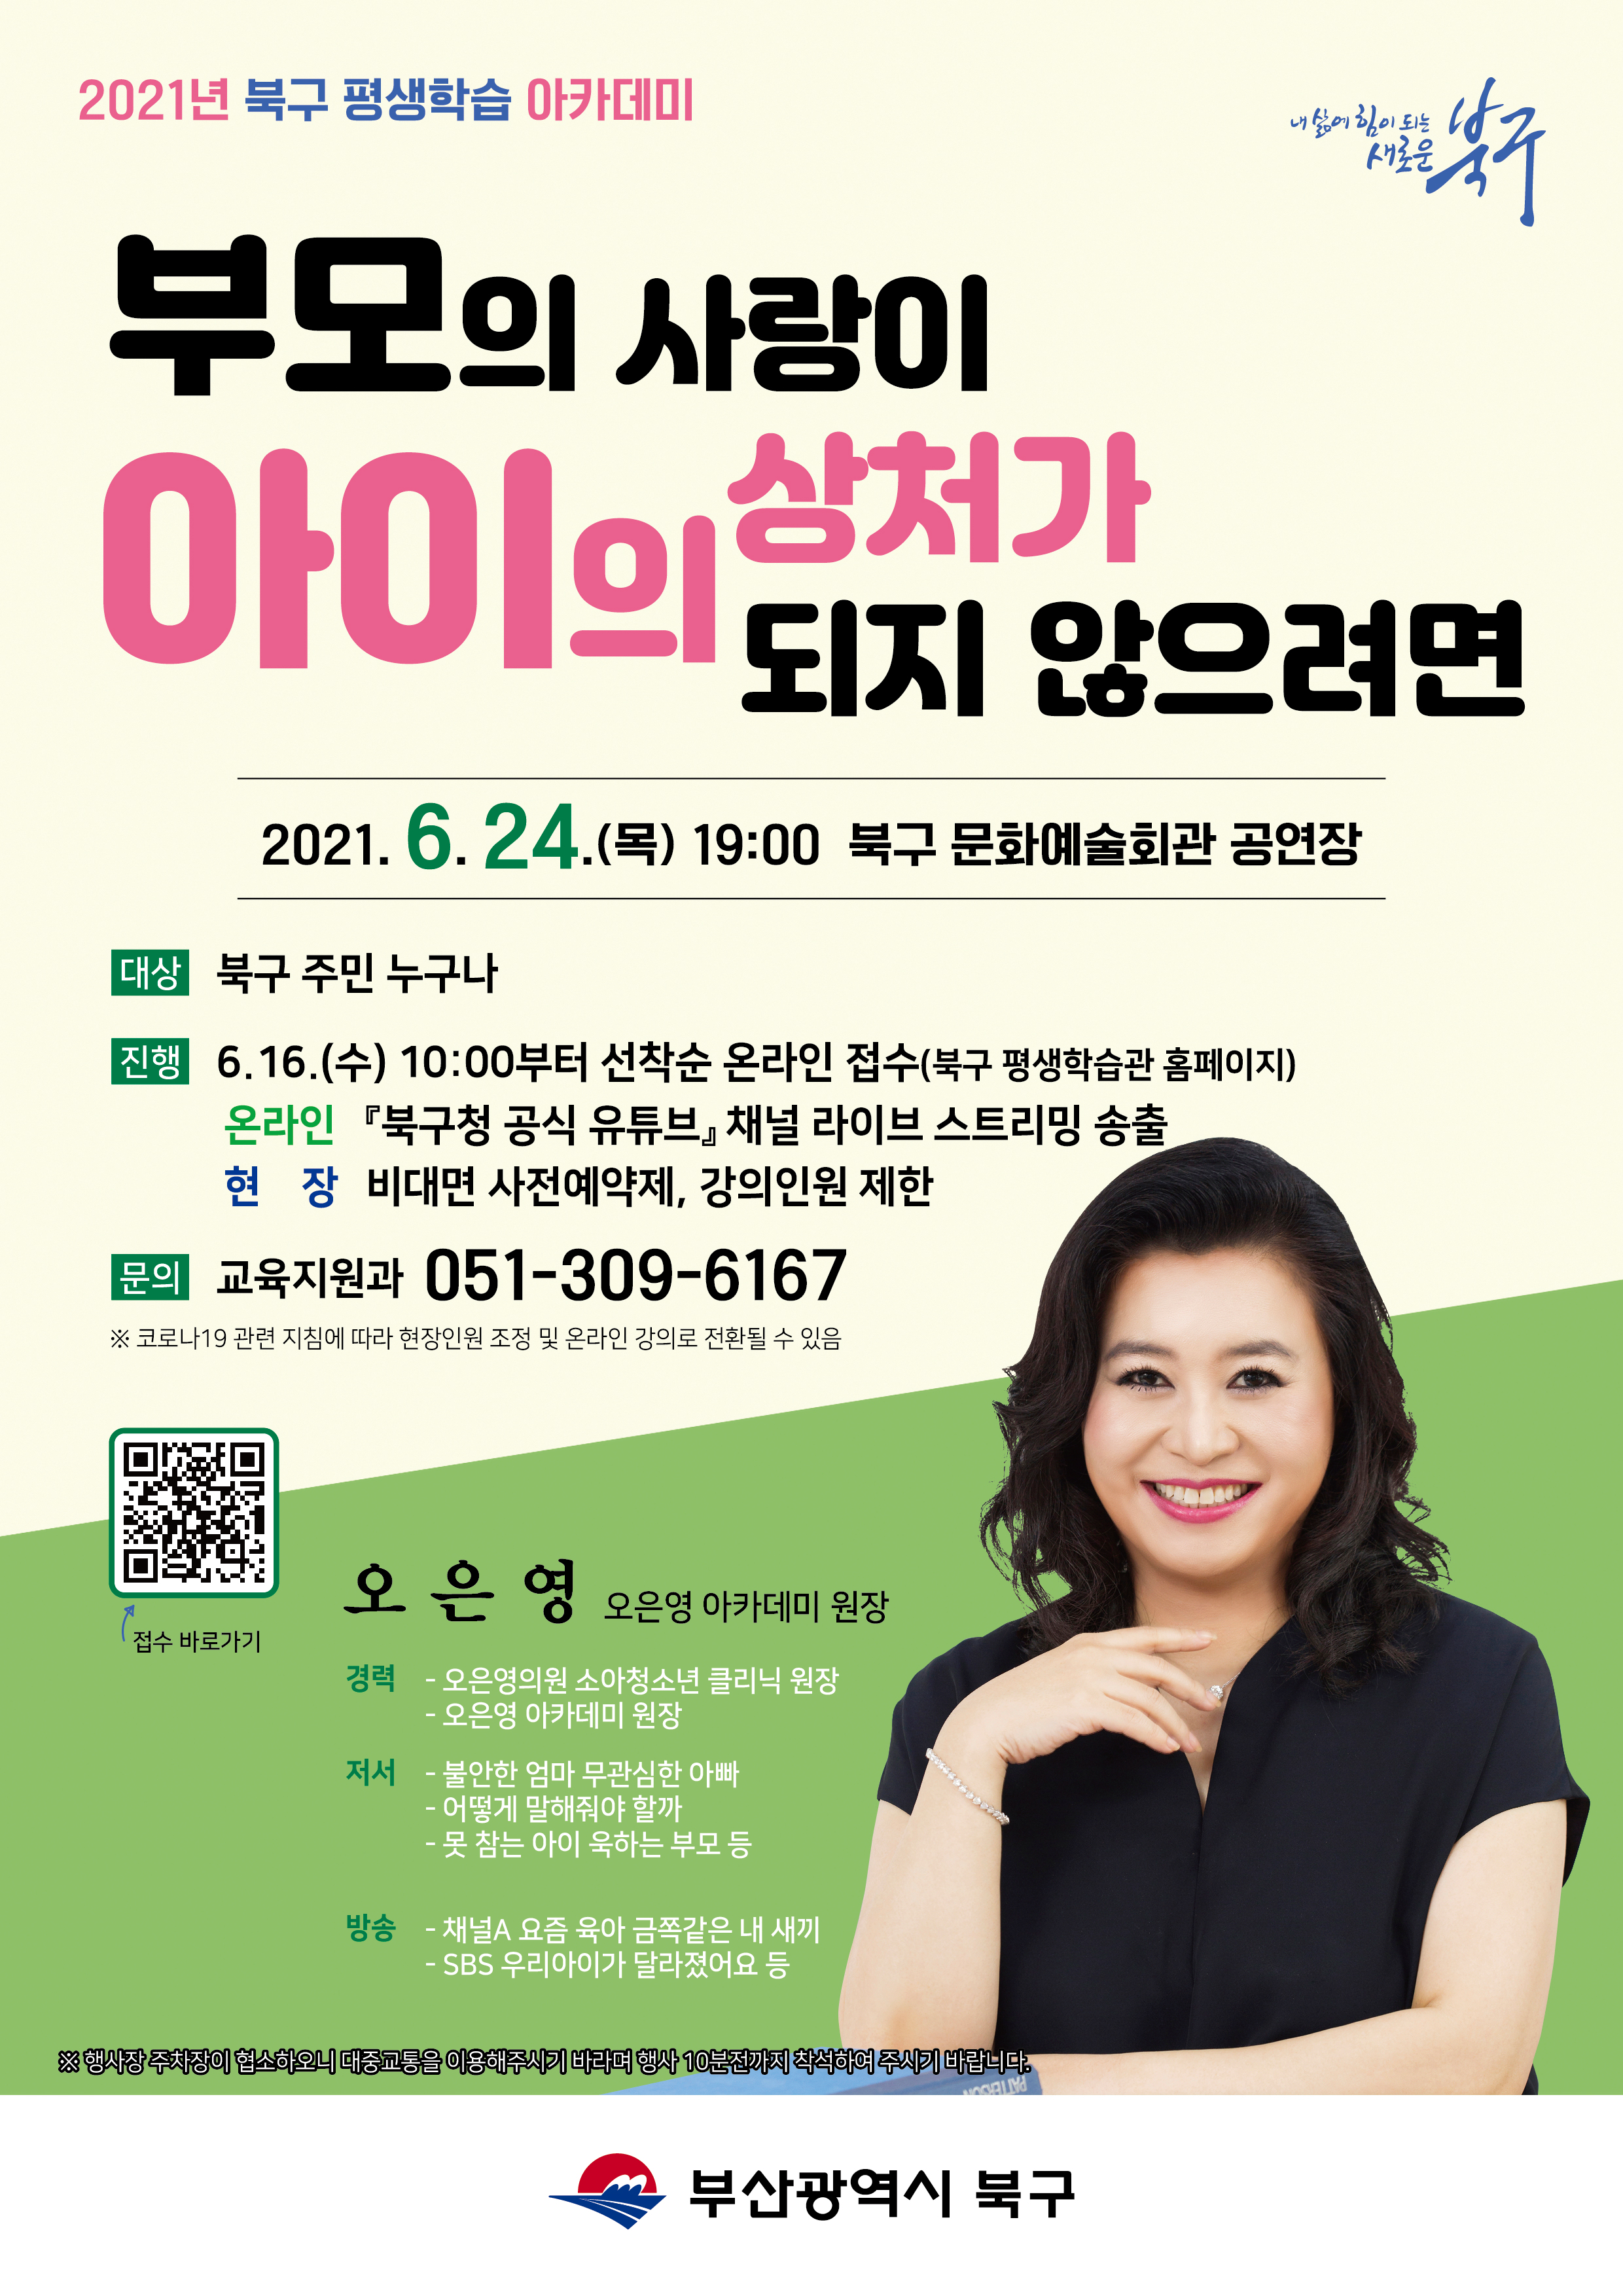 2021 북구 평생학습 아카데미 「오은영 박사 초청 강연」 안내